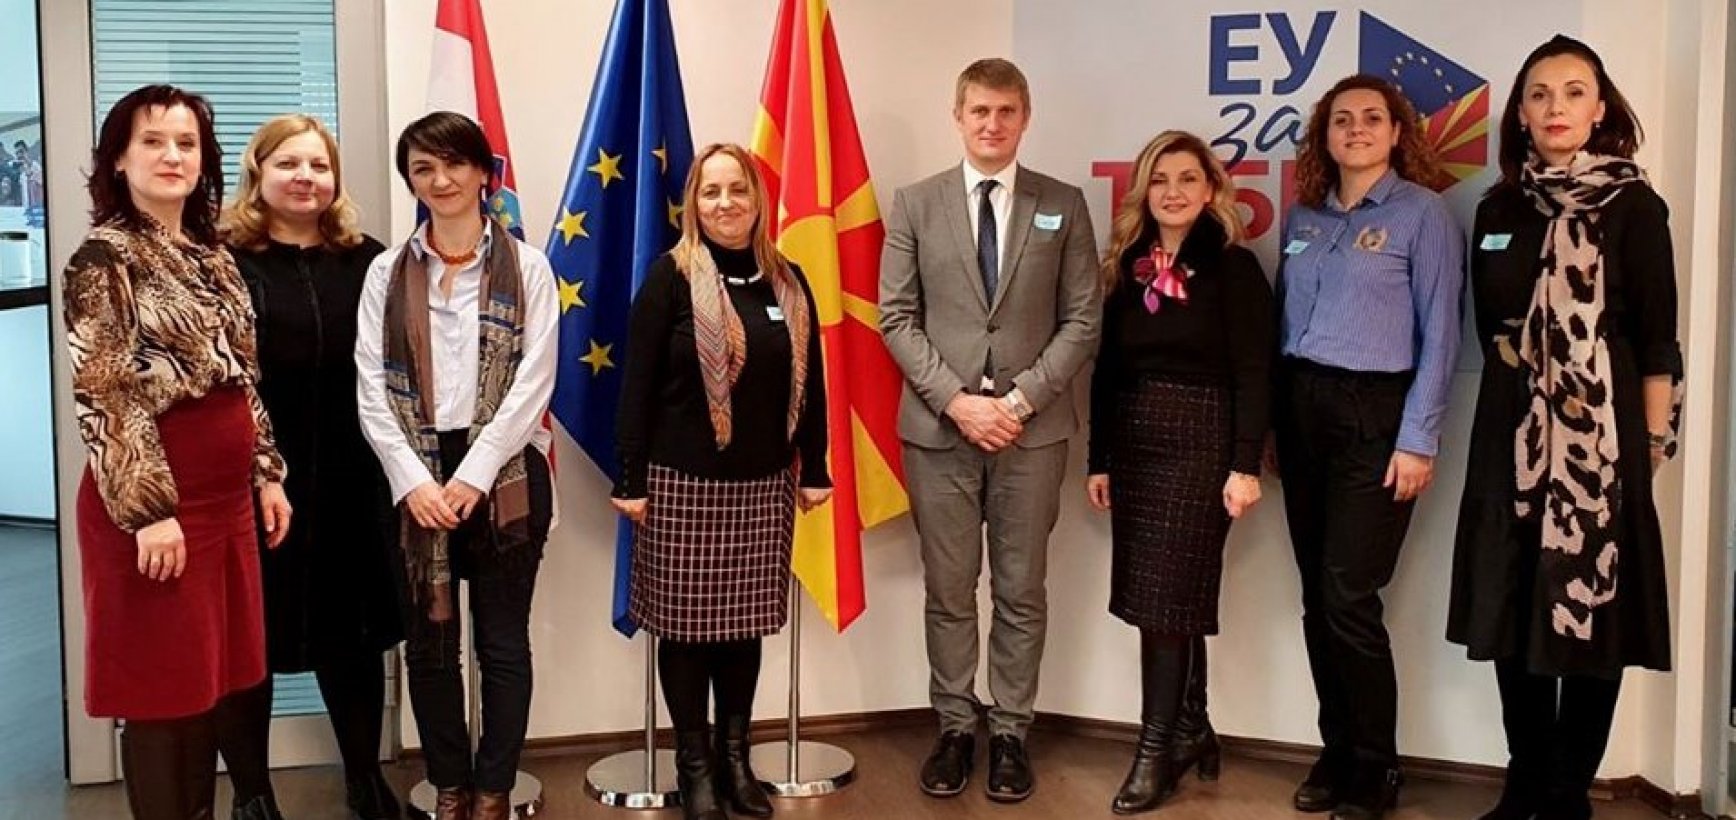 Dvynių projektas Šiaurės Makedonijoje padėjo pagrindus tolimesniam bendradarbiavimui  